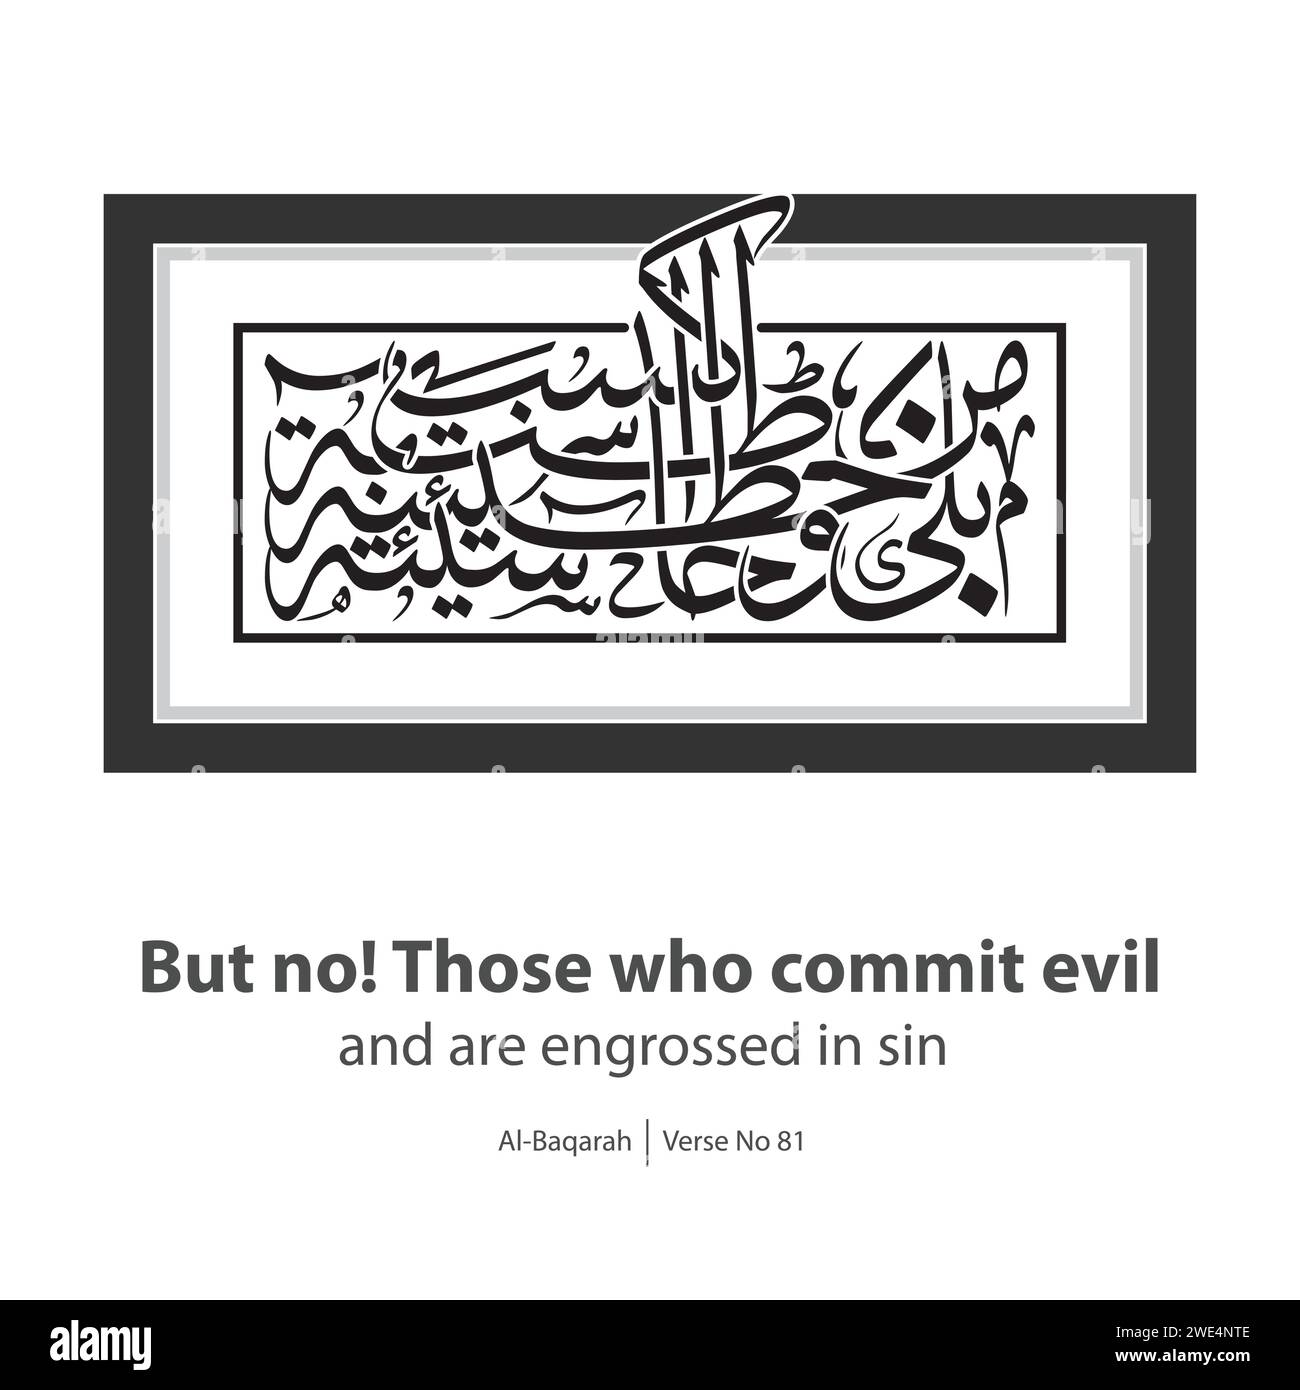 Calligraphie de commit evil, traduit en anglais par, mais pas ceux qui commettent le mal et sont absorbés dans le péché, verset n ° 81 de Al-Baqarah Illustration de Vecteur